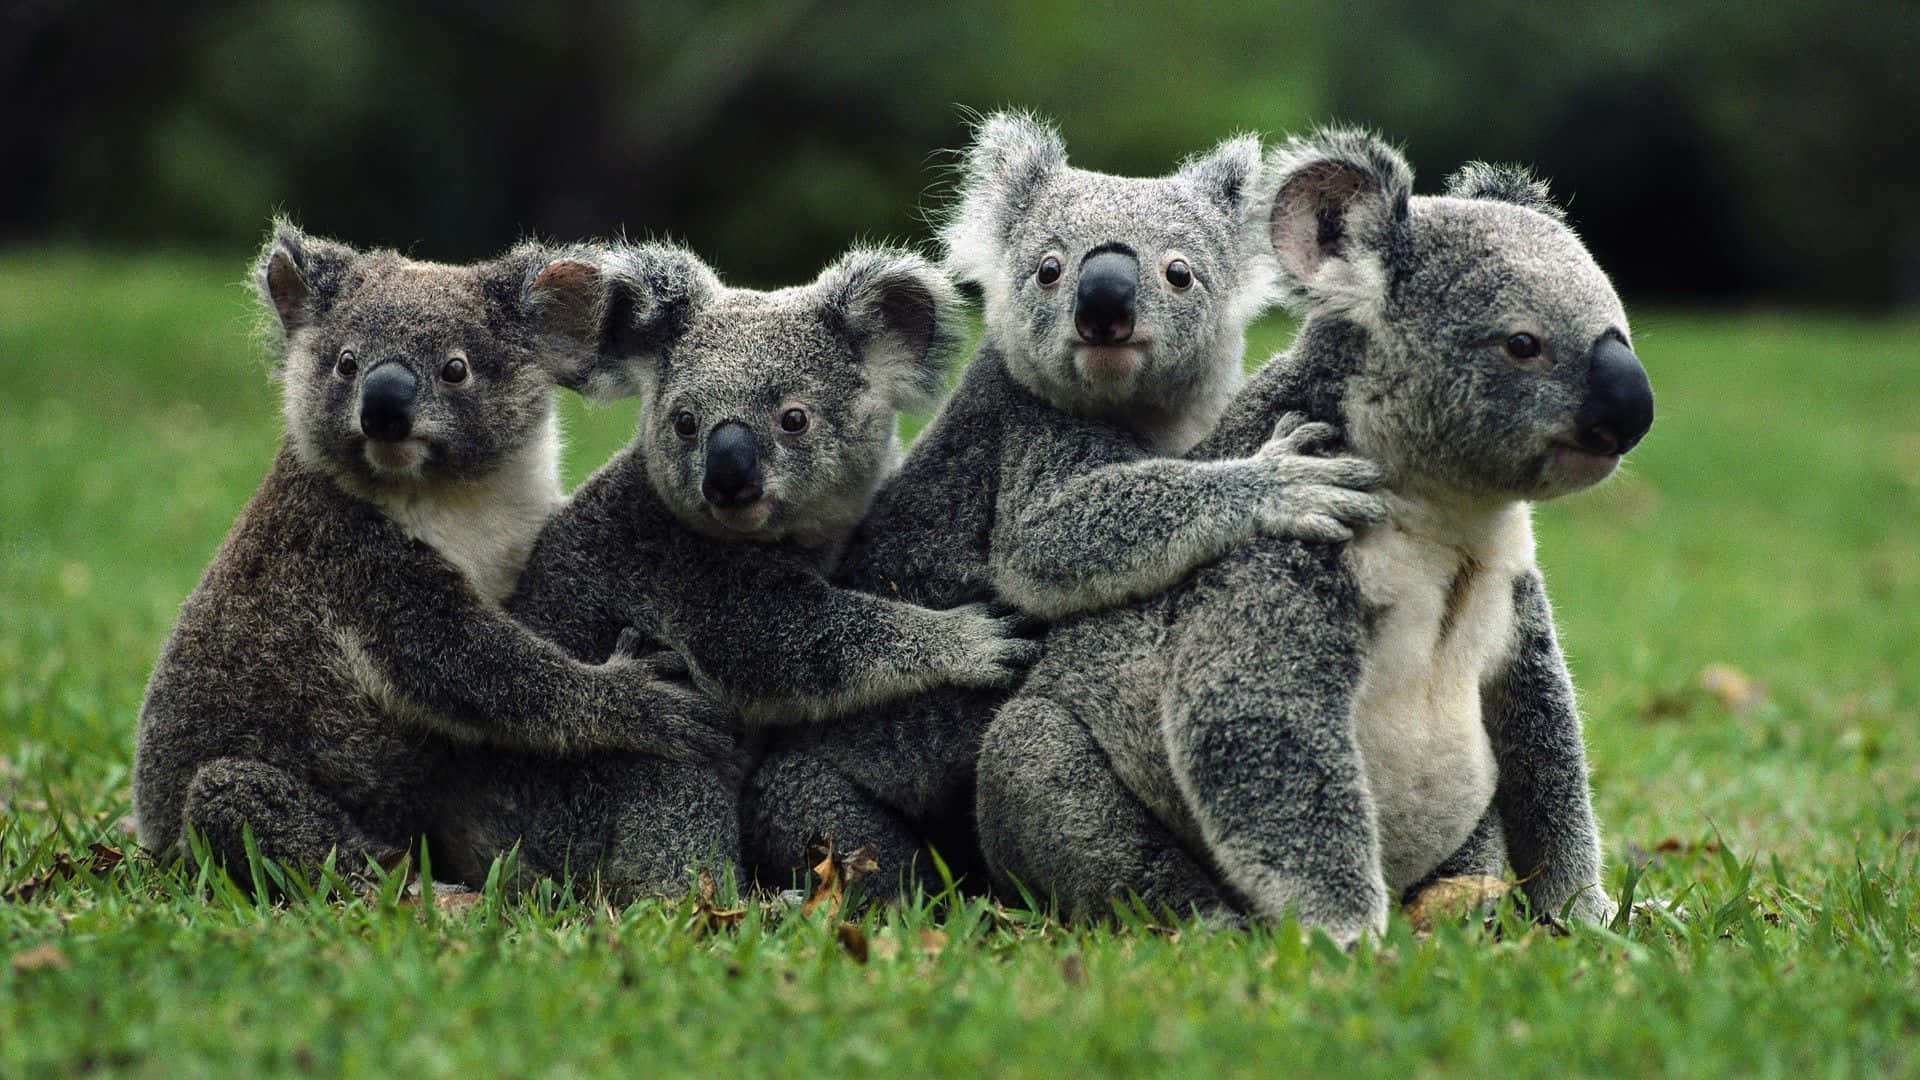 Etnærbillede Af En Smuk Koala, Der Putter Sig Op Imod Stammen Af Et Træ.